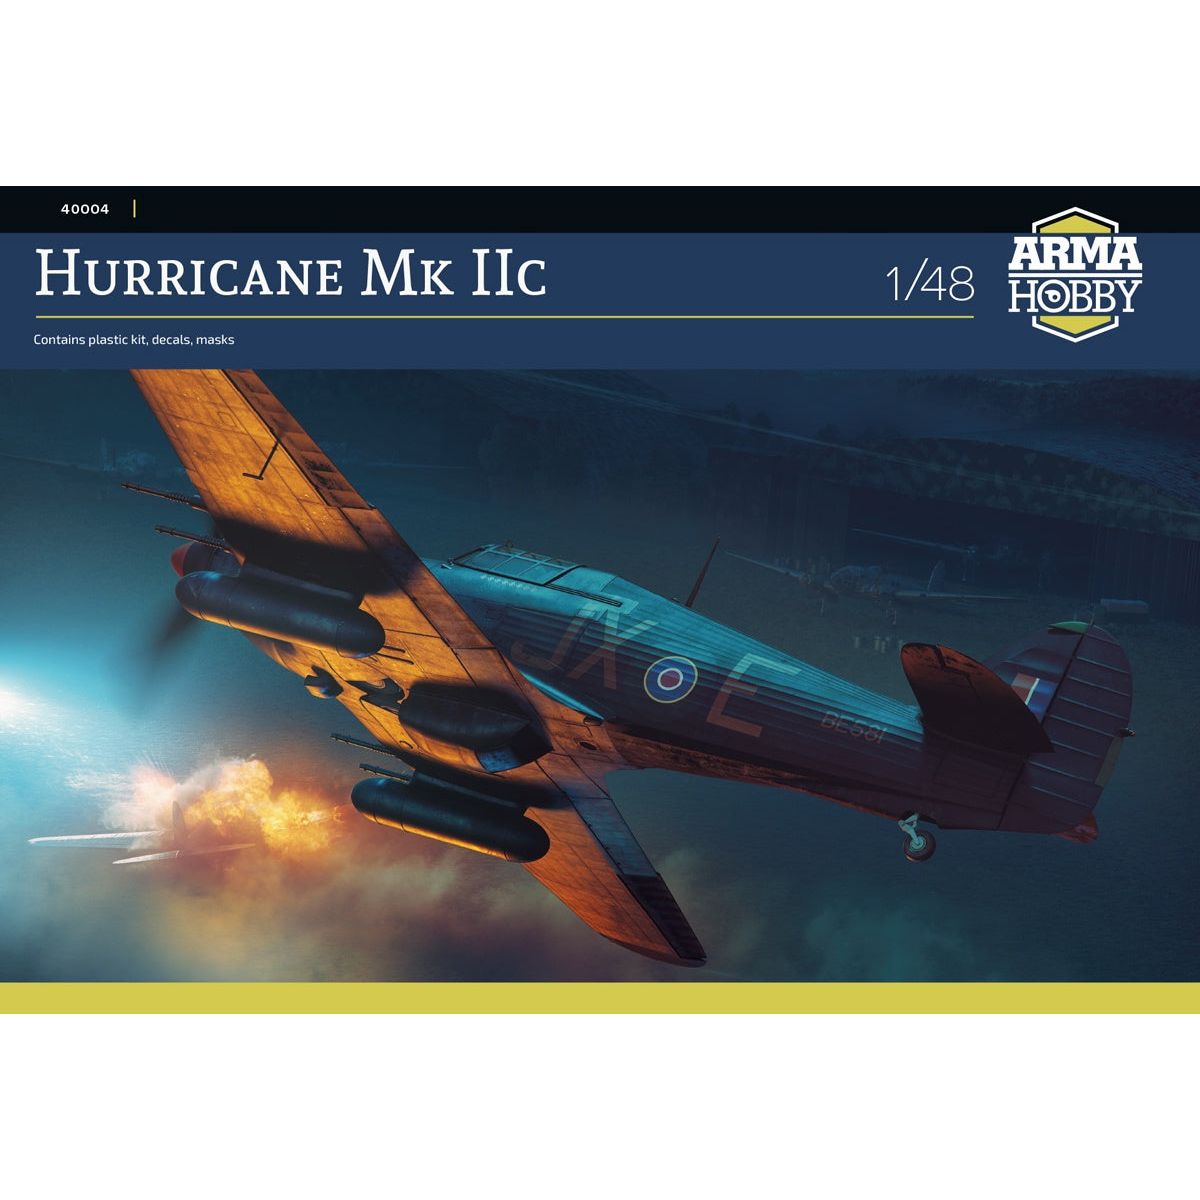 Hurricane Mk IIc 1/48 #40004 by Arma Hobby